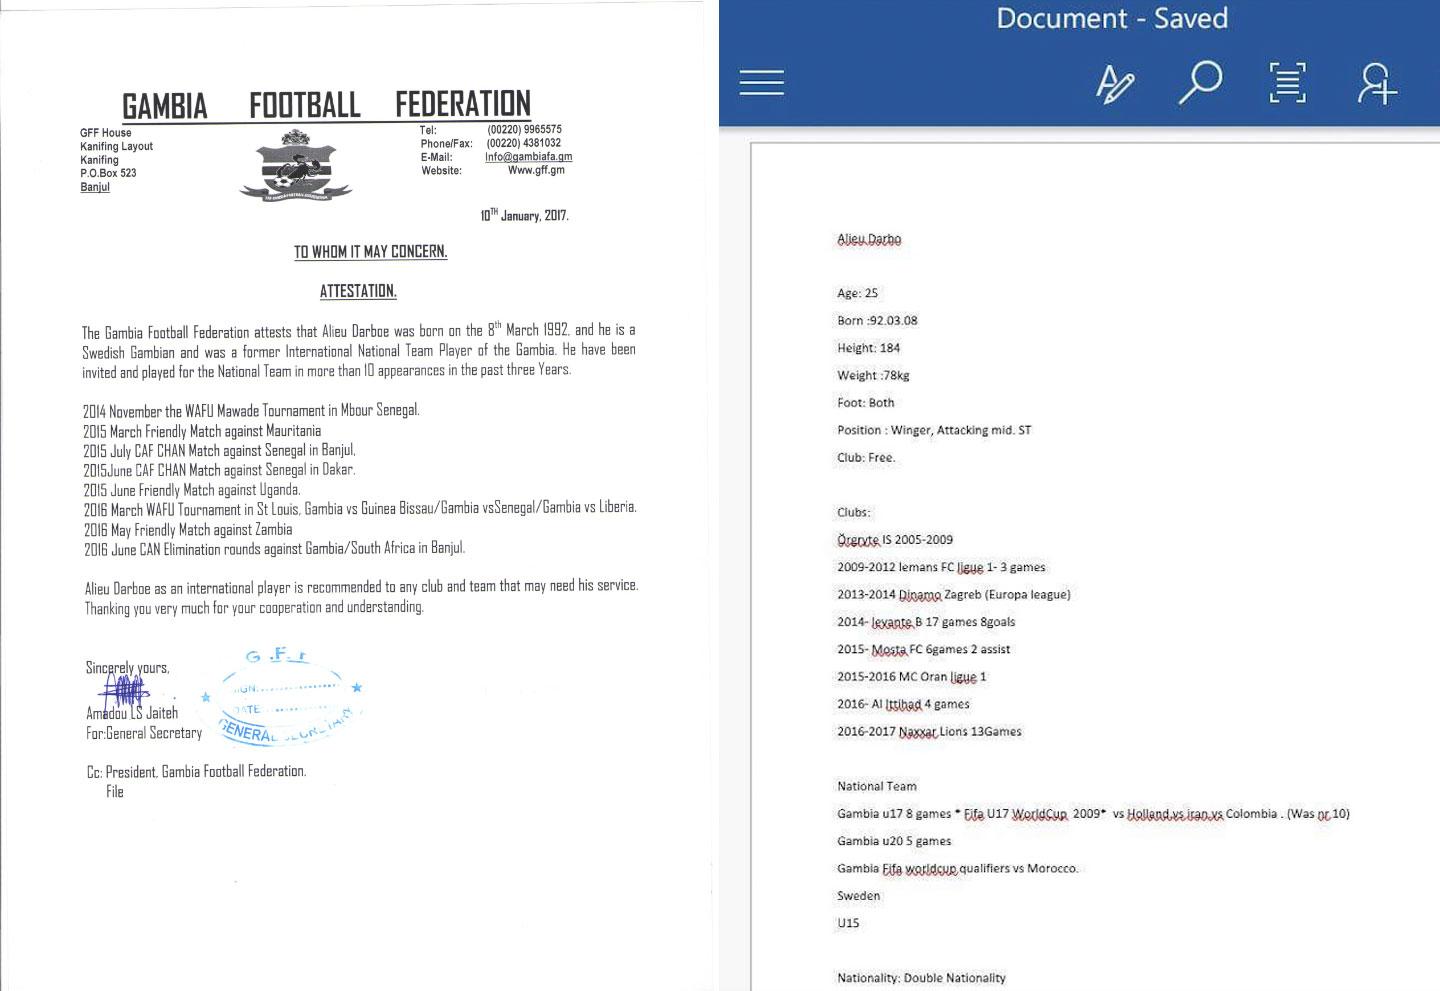 Dokumenten som bifogas i det första mejlet till fotbollsagenten Ghassem Maklouf.